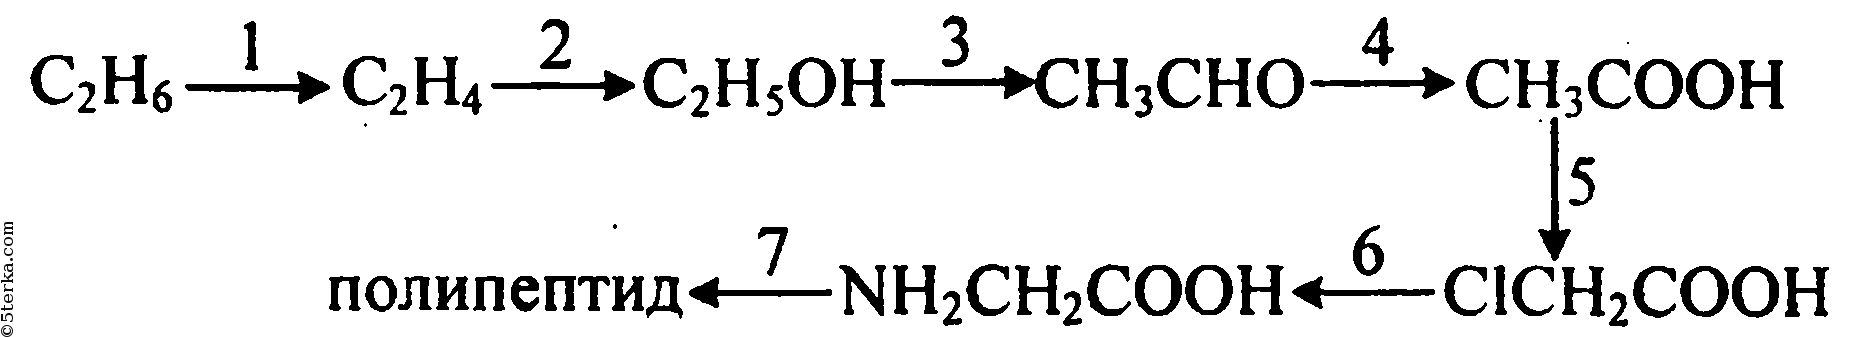 Этаналь и гидроксид натрия